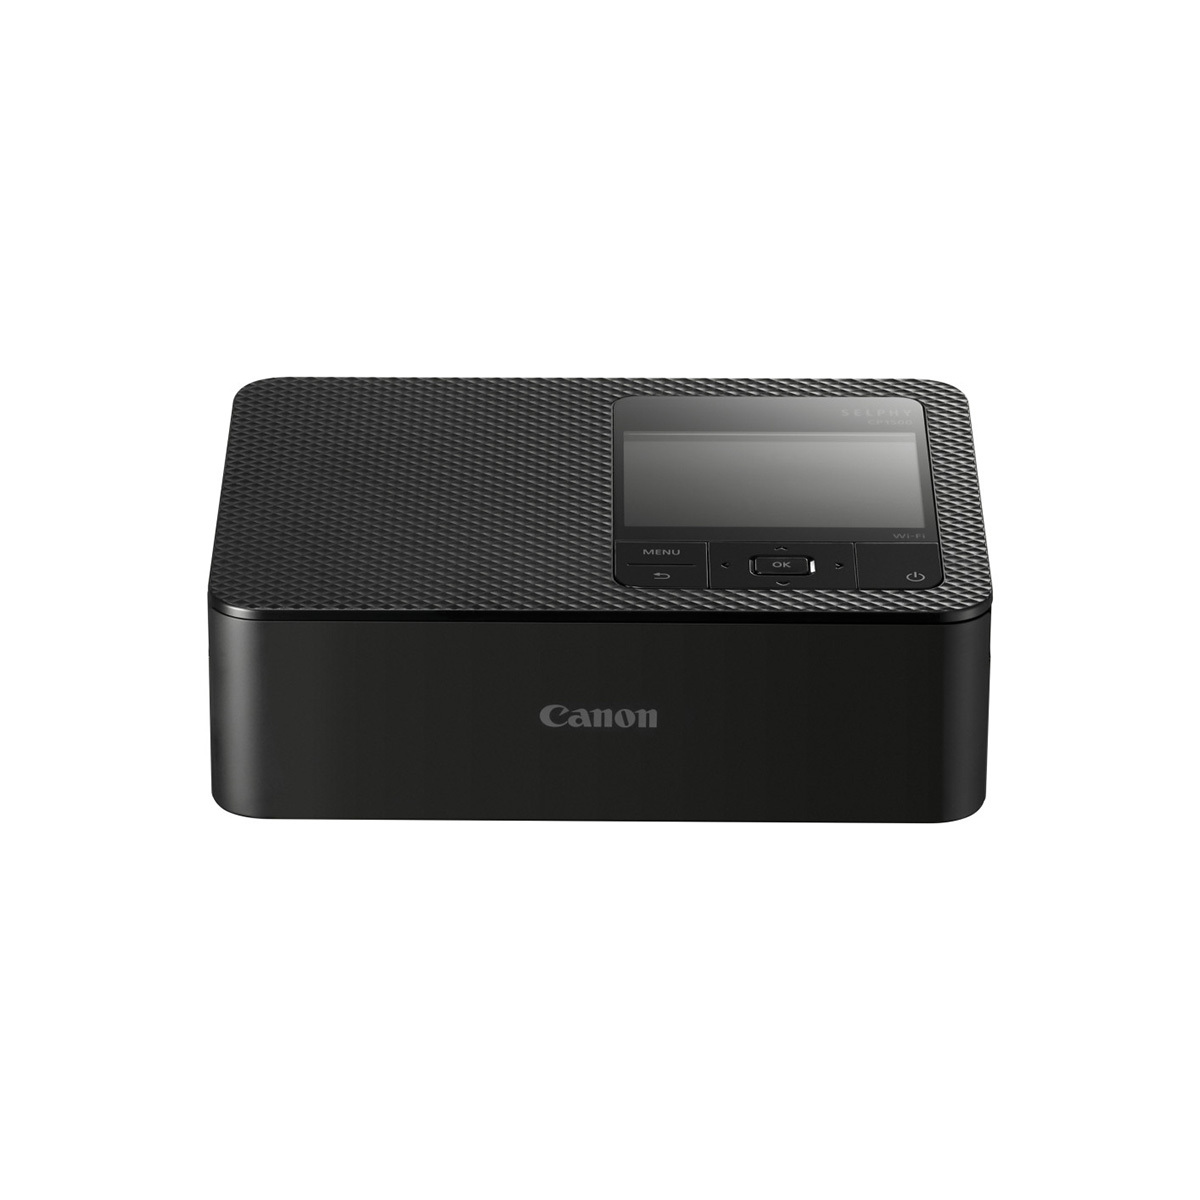 캐논 포토 프린터 CP1500 & 인화지 RP-108 세트 - 블랙